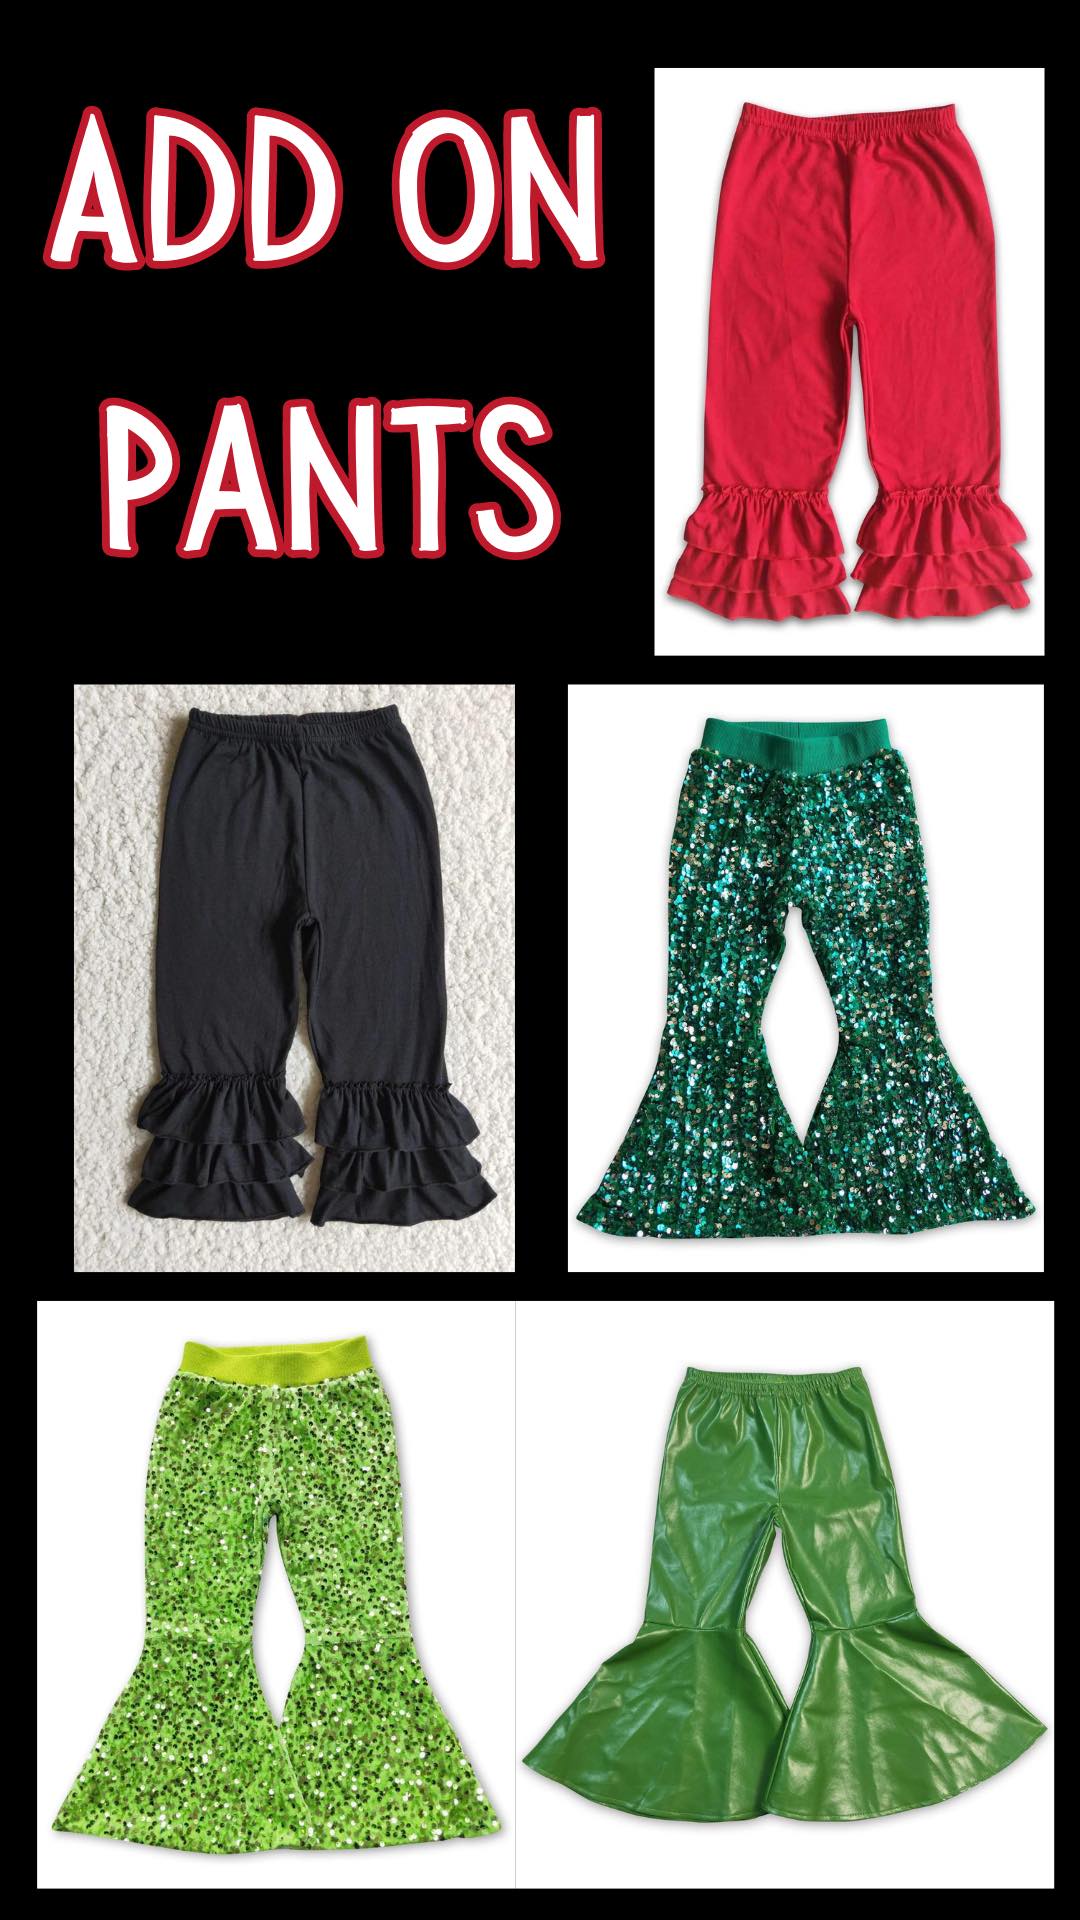 ᴡᴇᴇᴋʟʏ ᴘʀᴇ ᴏʀᴅᴇʀ Pants and More Pants!